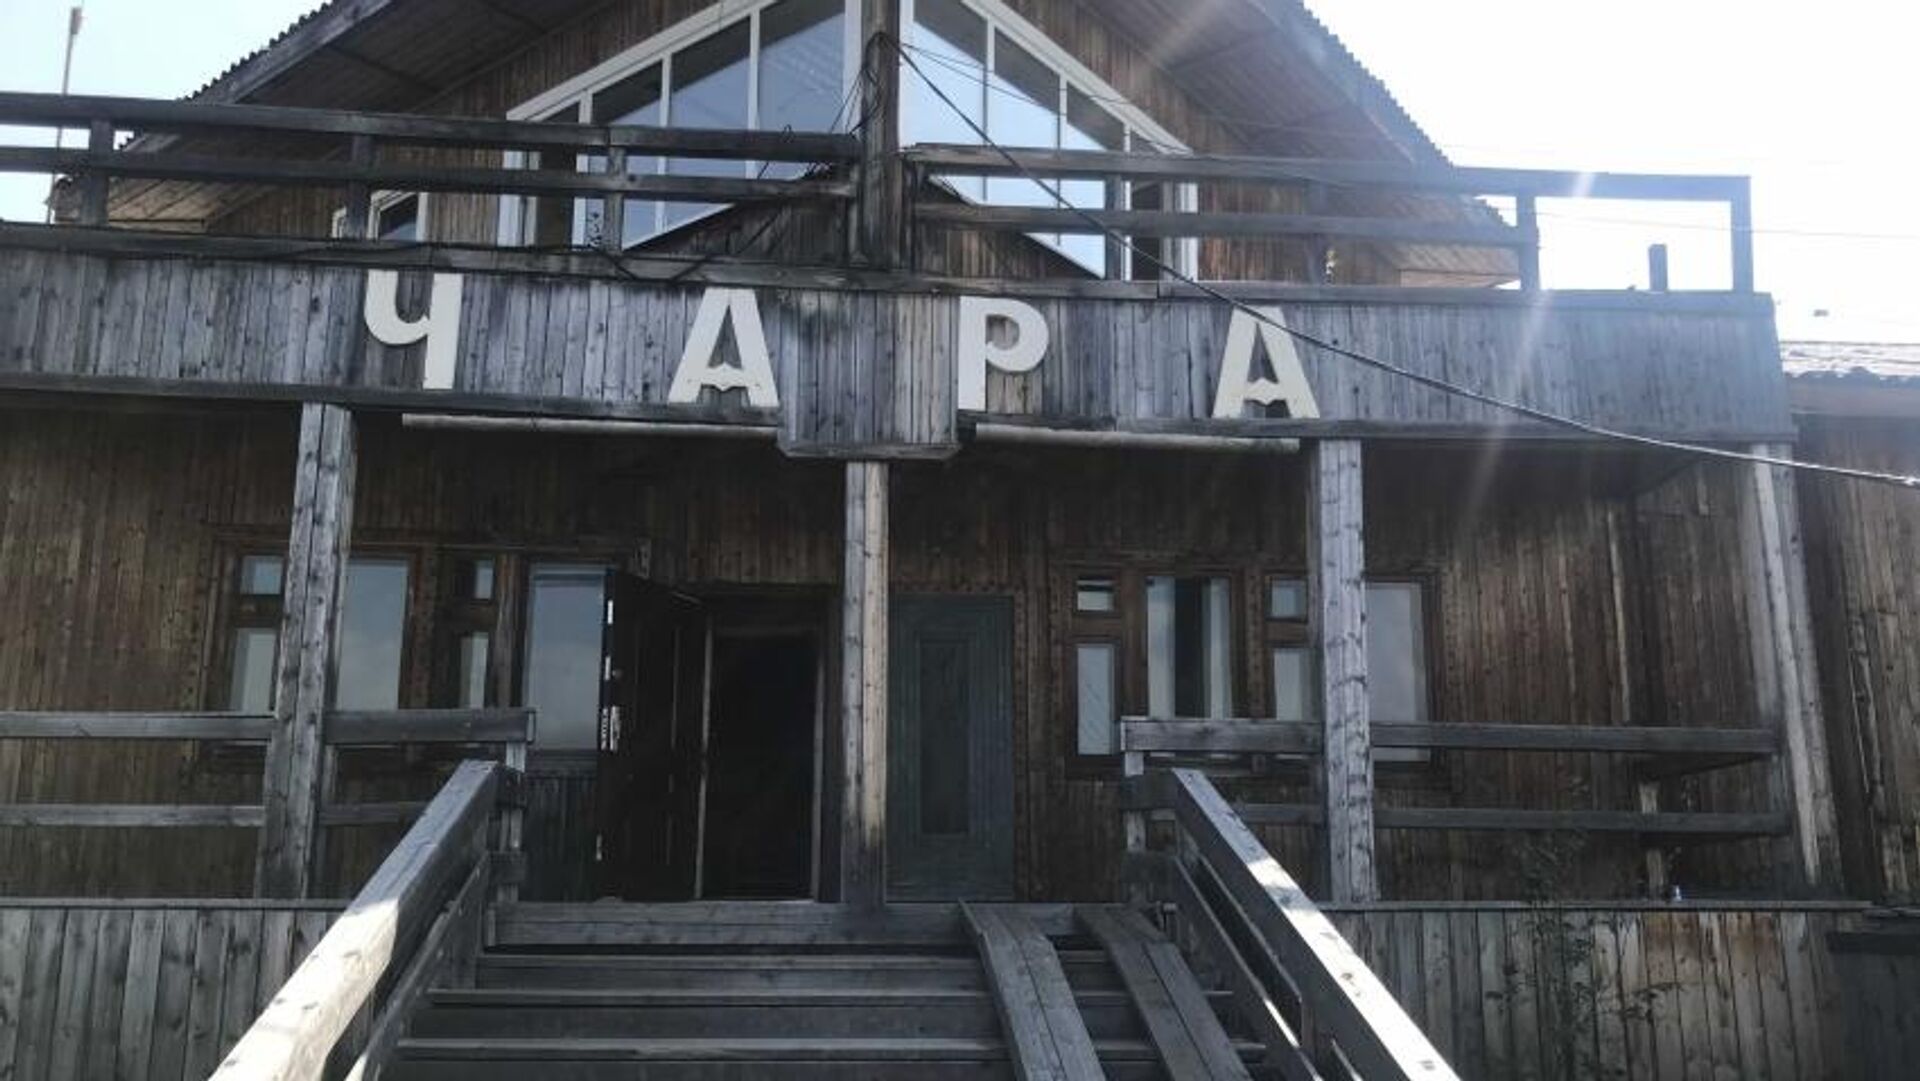 Реконструкция аэропорта Чара в Забайкалье начнется на два года раньше - РИА Новости, 1920, 14.10.2020